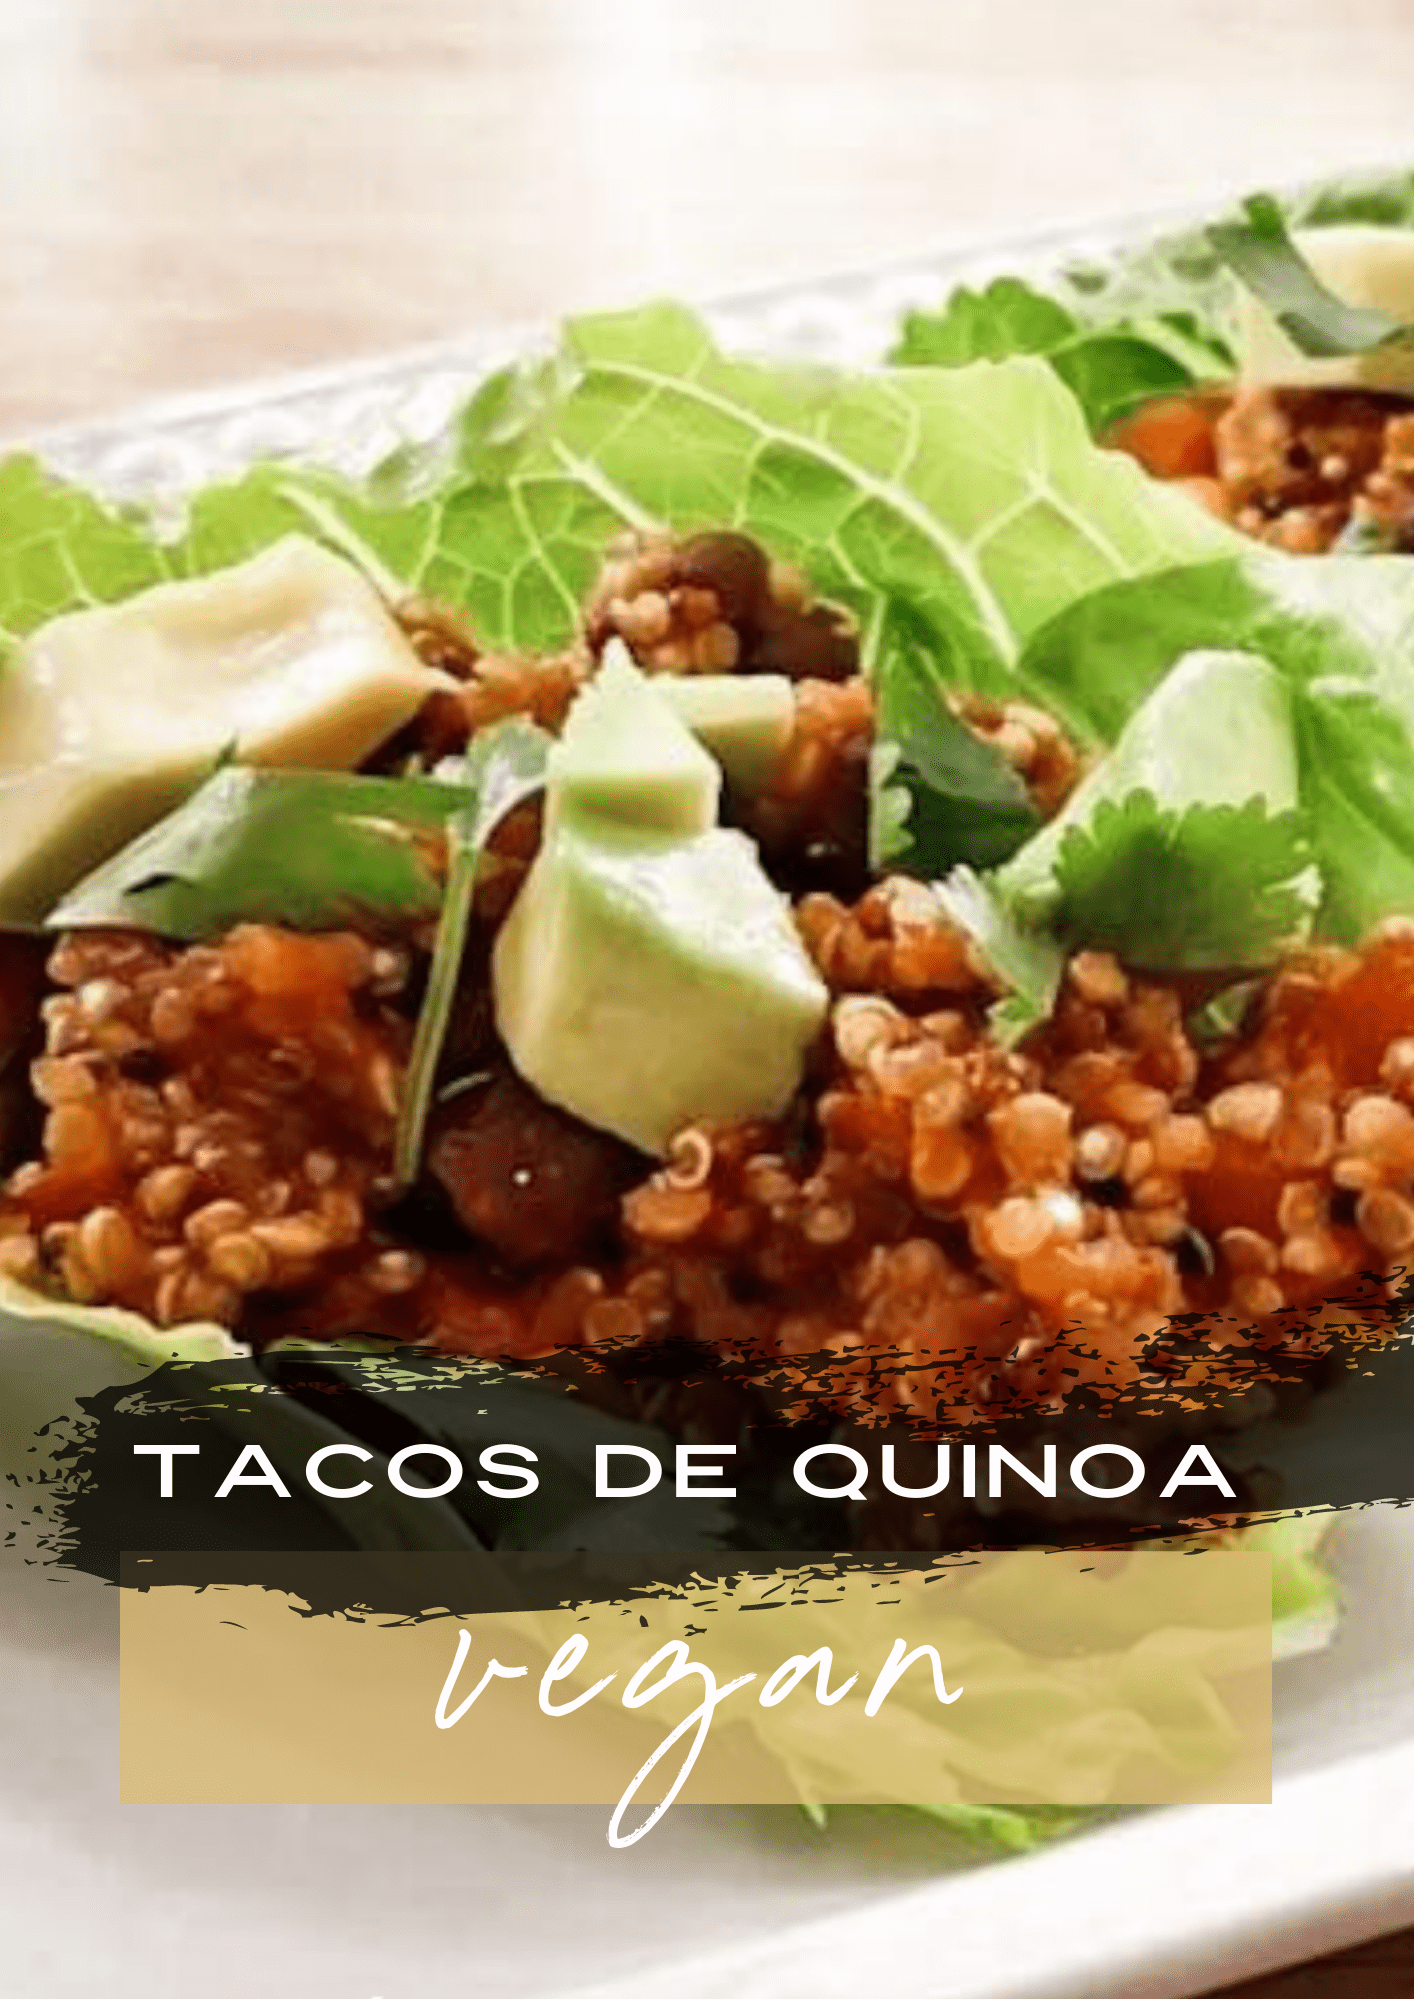 Tacos de quinoa vegan